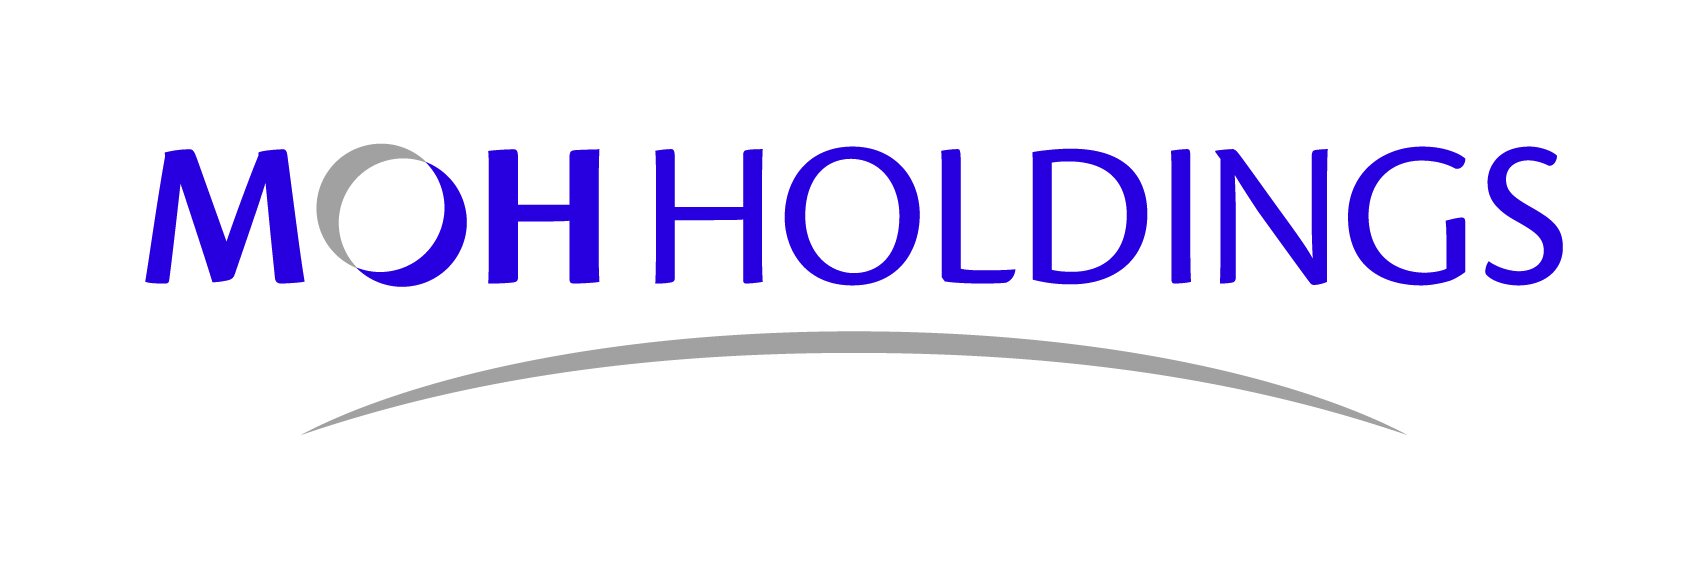 MOH Holdings Logo_Full Colour.jpg